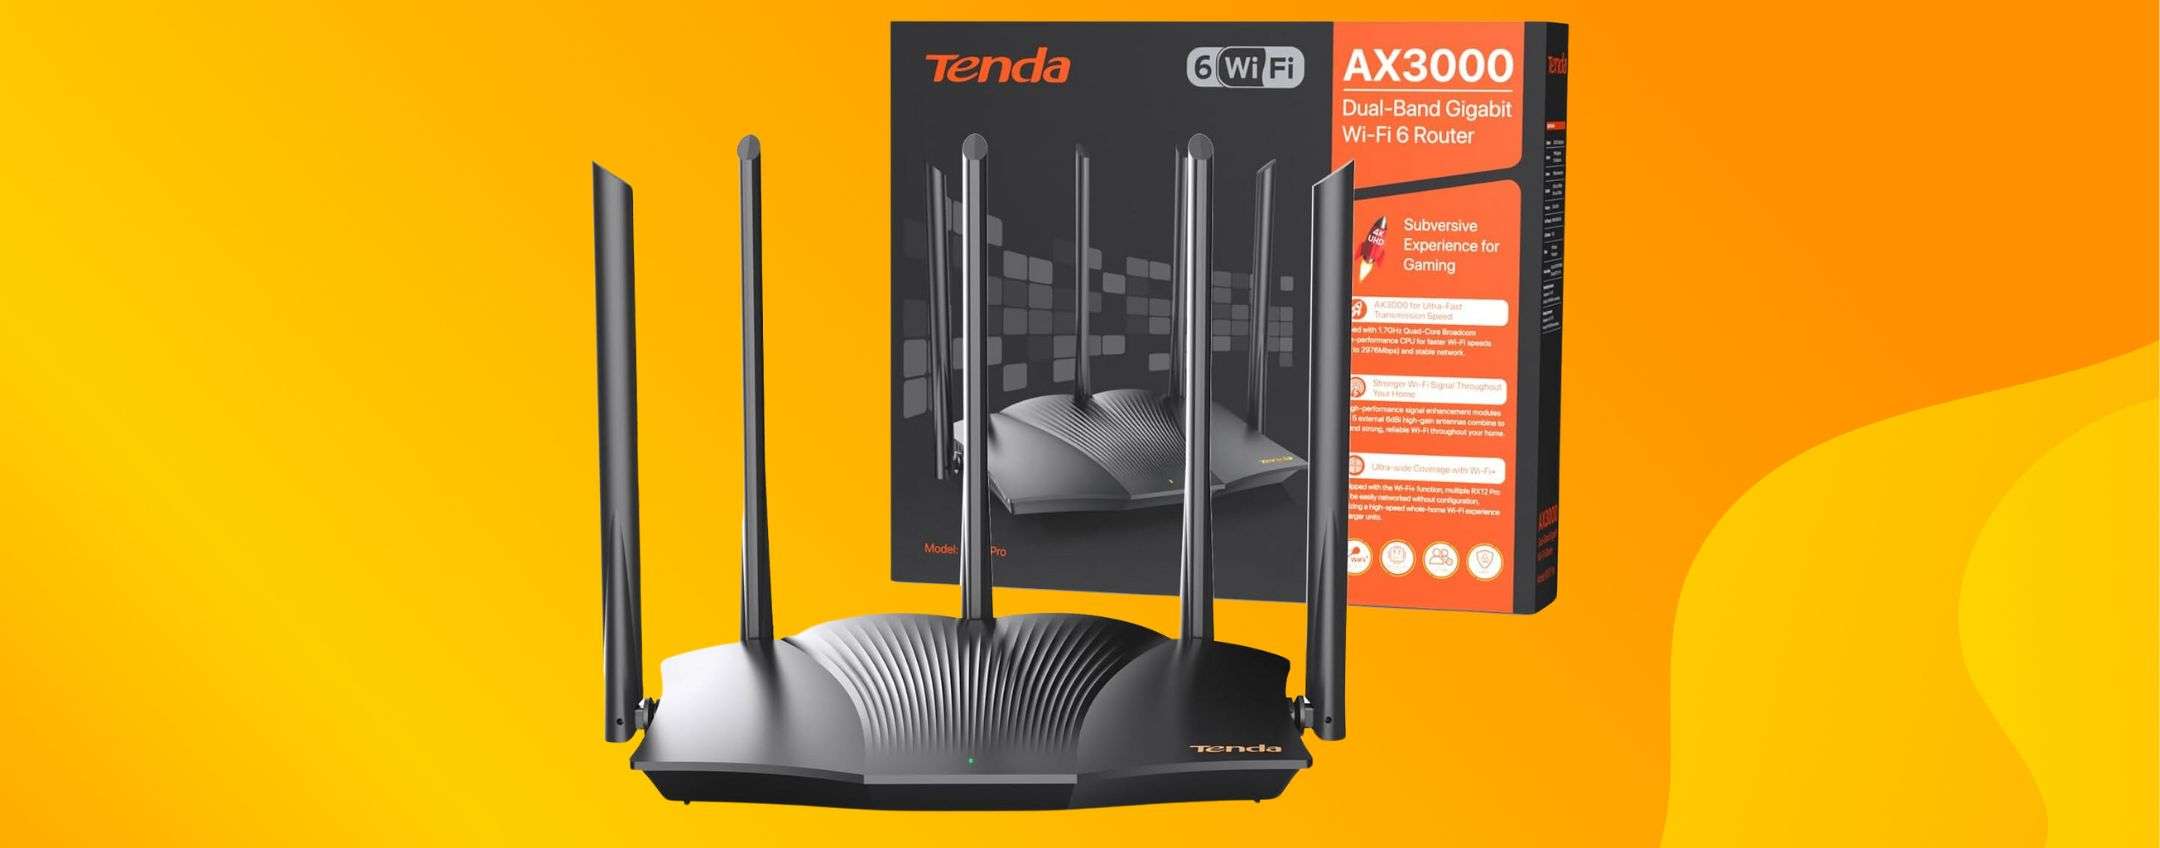 Router wifi6 Tenda offerta Amazon